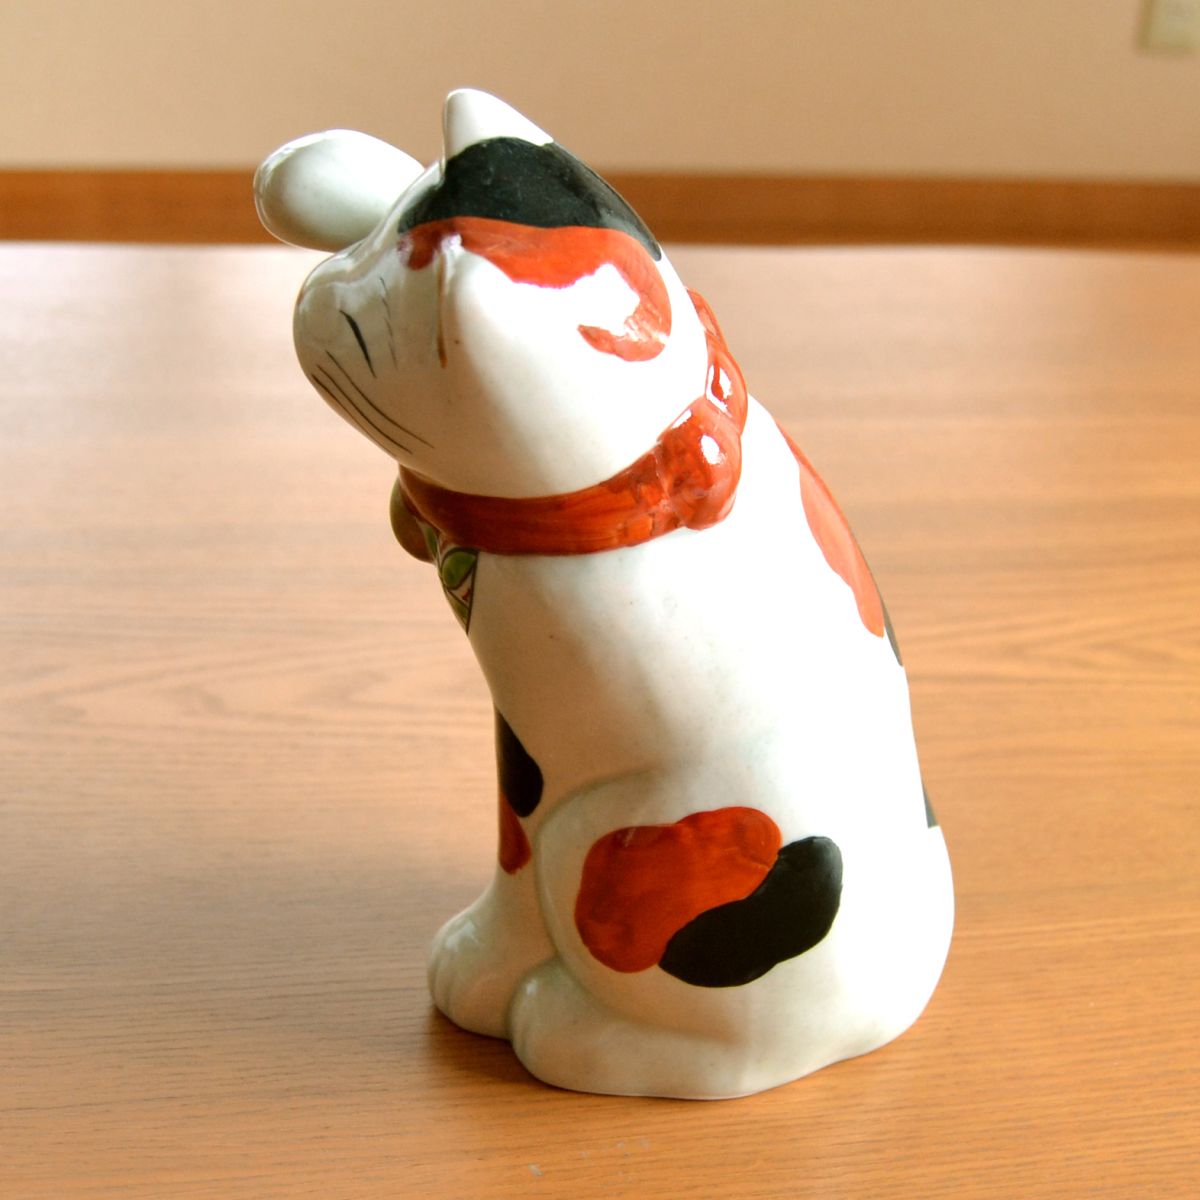 日本のお土産 おみやげ 海外へのおみやげ 伝統工芸品 有田焼 招き猫 置物 飾り オブジェ 陶器 日本製